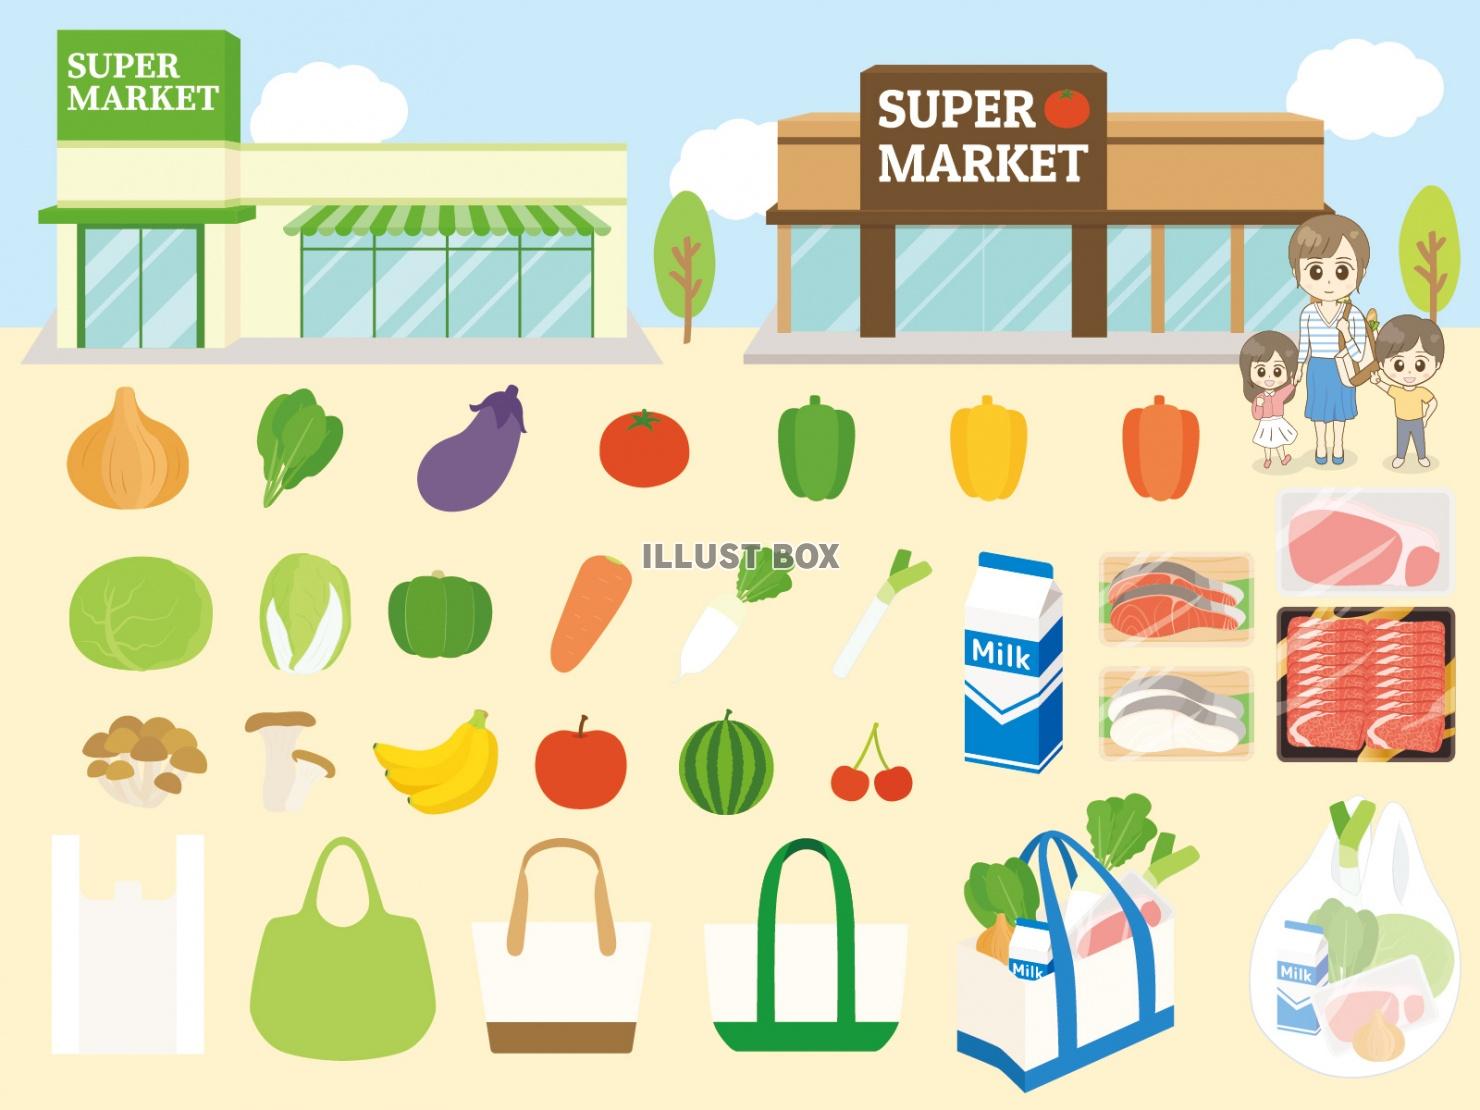 スーパーマーケットセット(レジ袋、ポリ袋、買い物袋、トートバ...